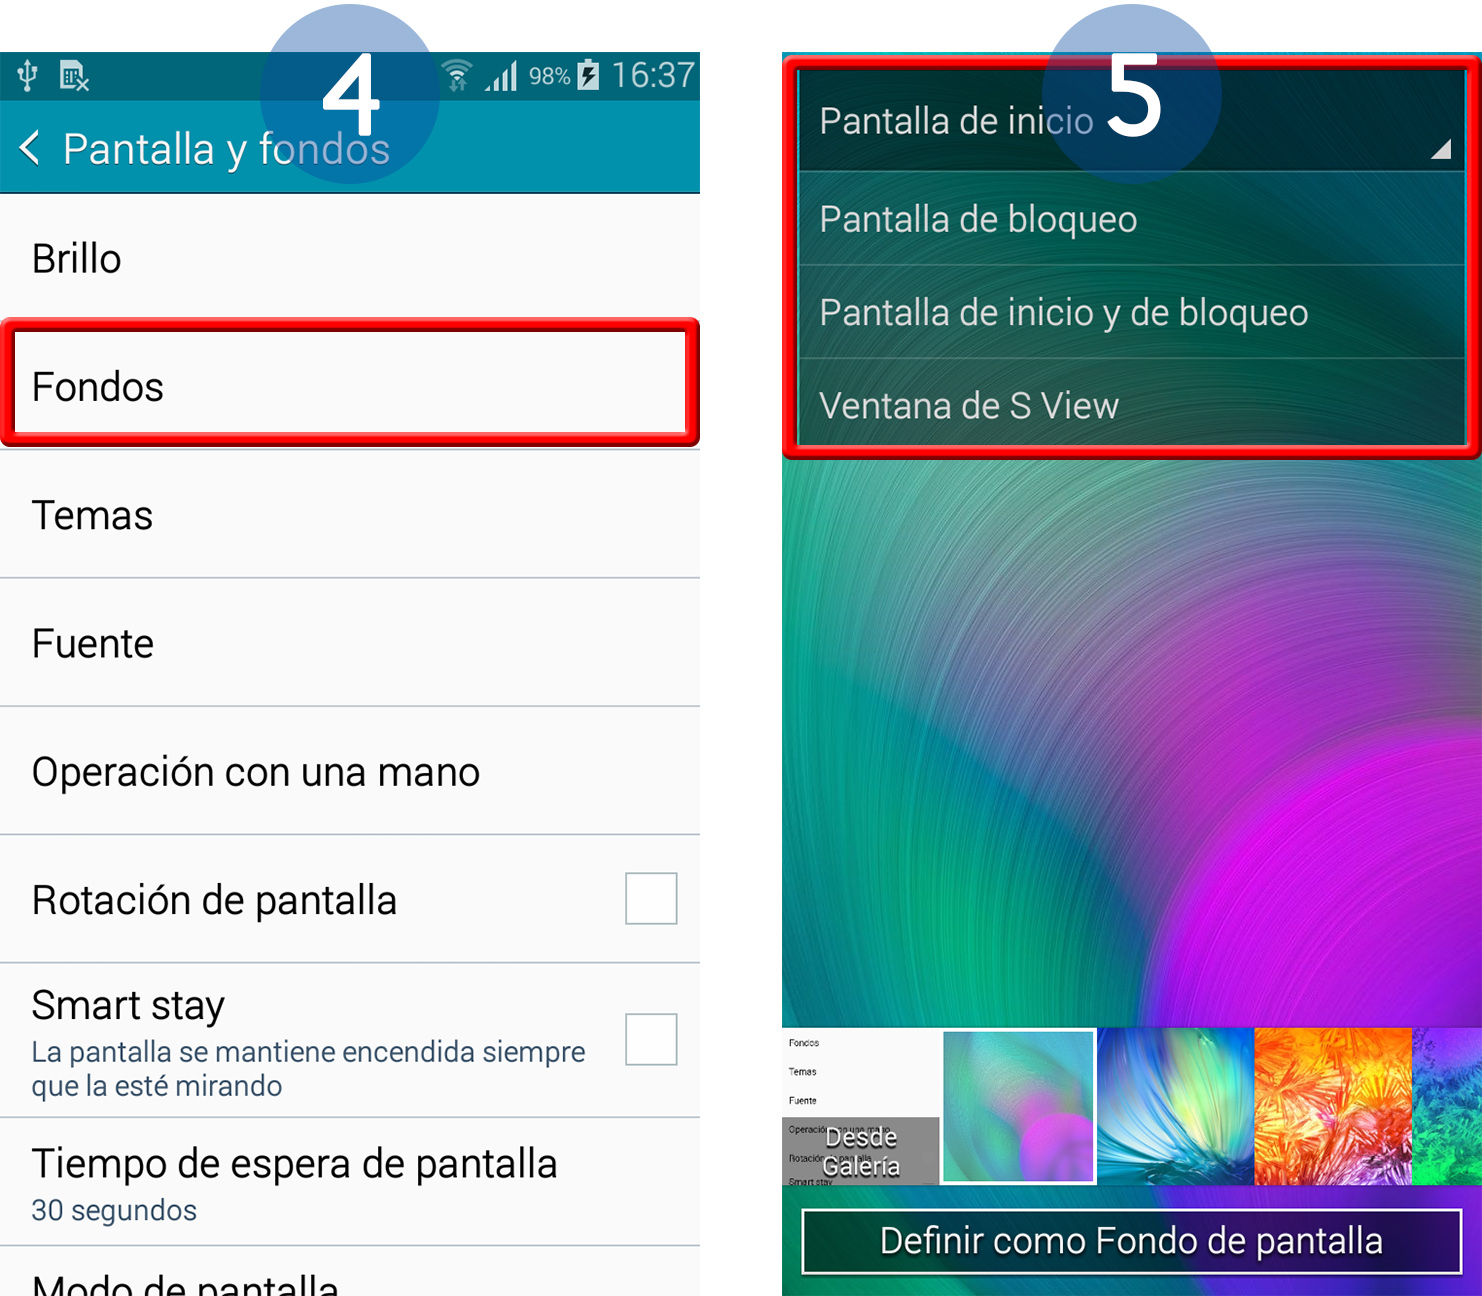 Galaxy A5) ¿Cómo cambiamos el fondo de pantalla de nuestro dispositivo? |  Samsung CL